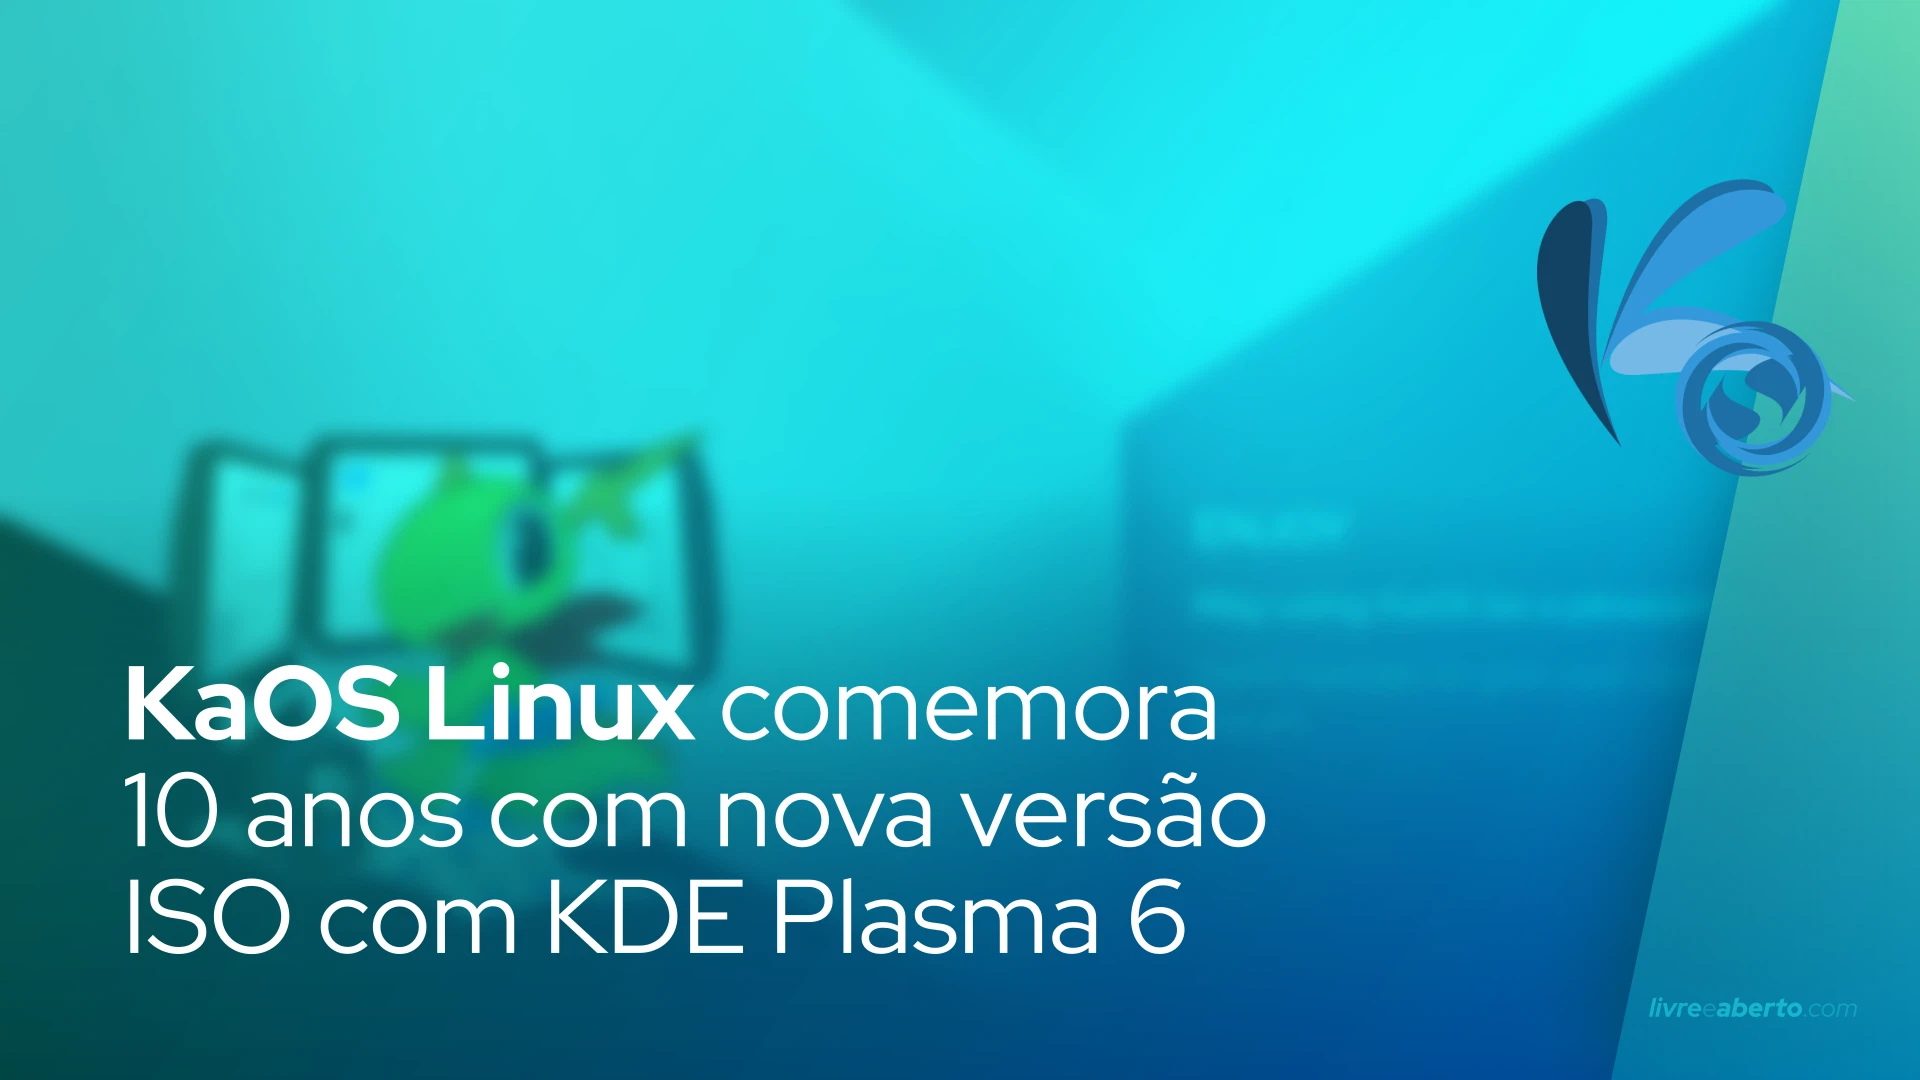 KaOS Linux comemora 10 anos com nova versão ISO com KDE Plasma 6